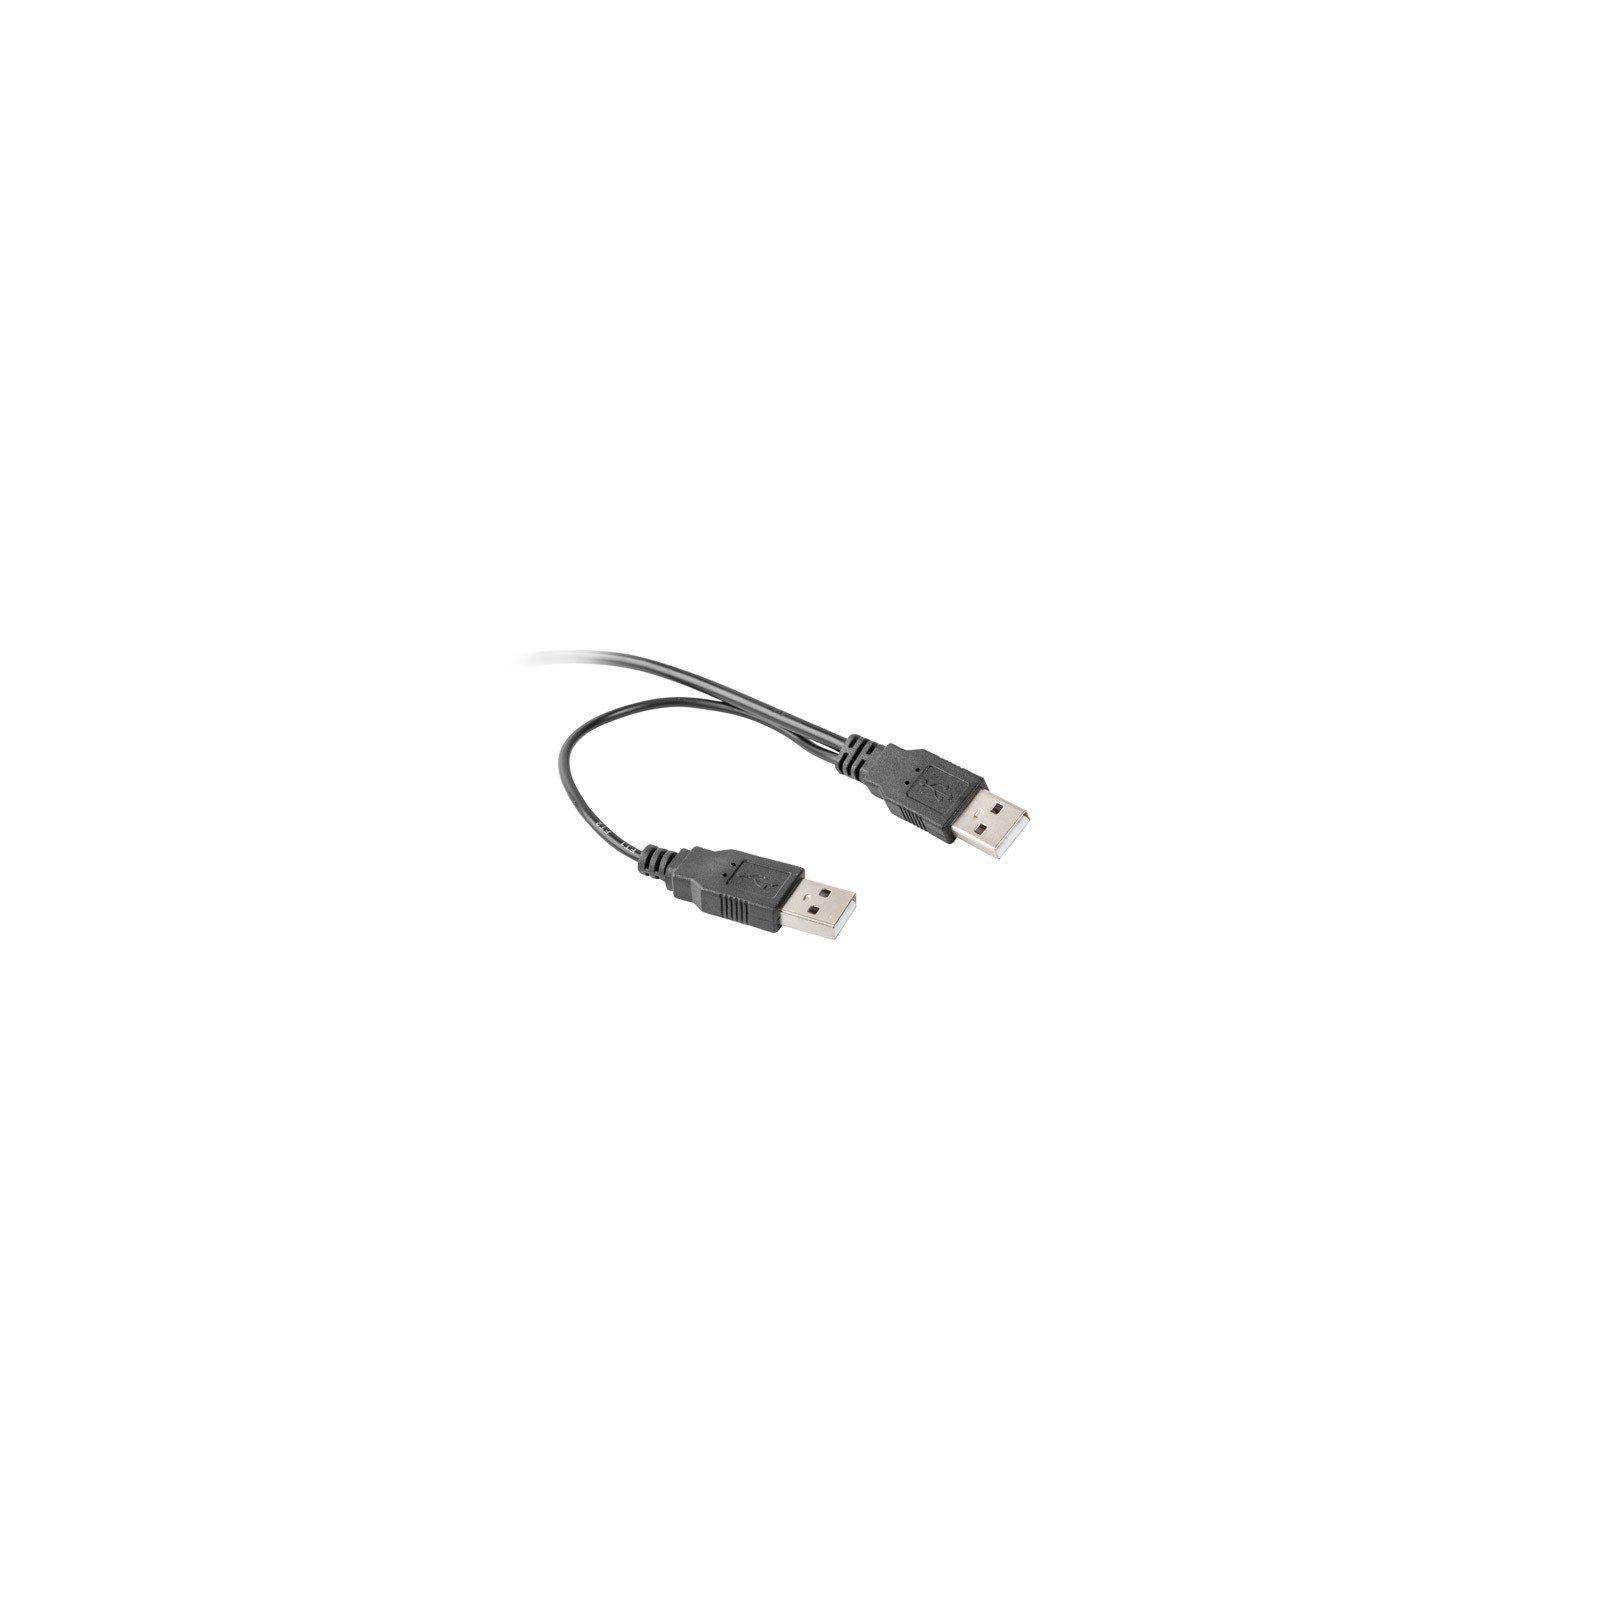 Переходник USB 2.0 to Slimline SATA 13 pin Cablexpert (A-USATA-01) изображение 3